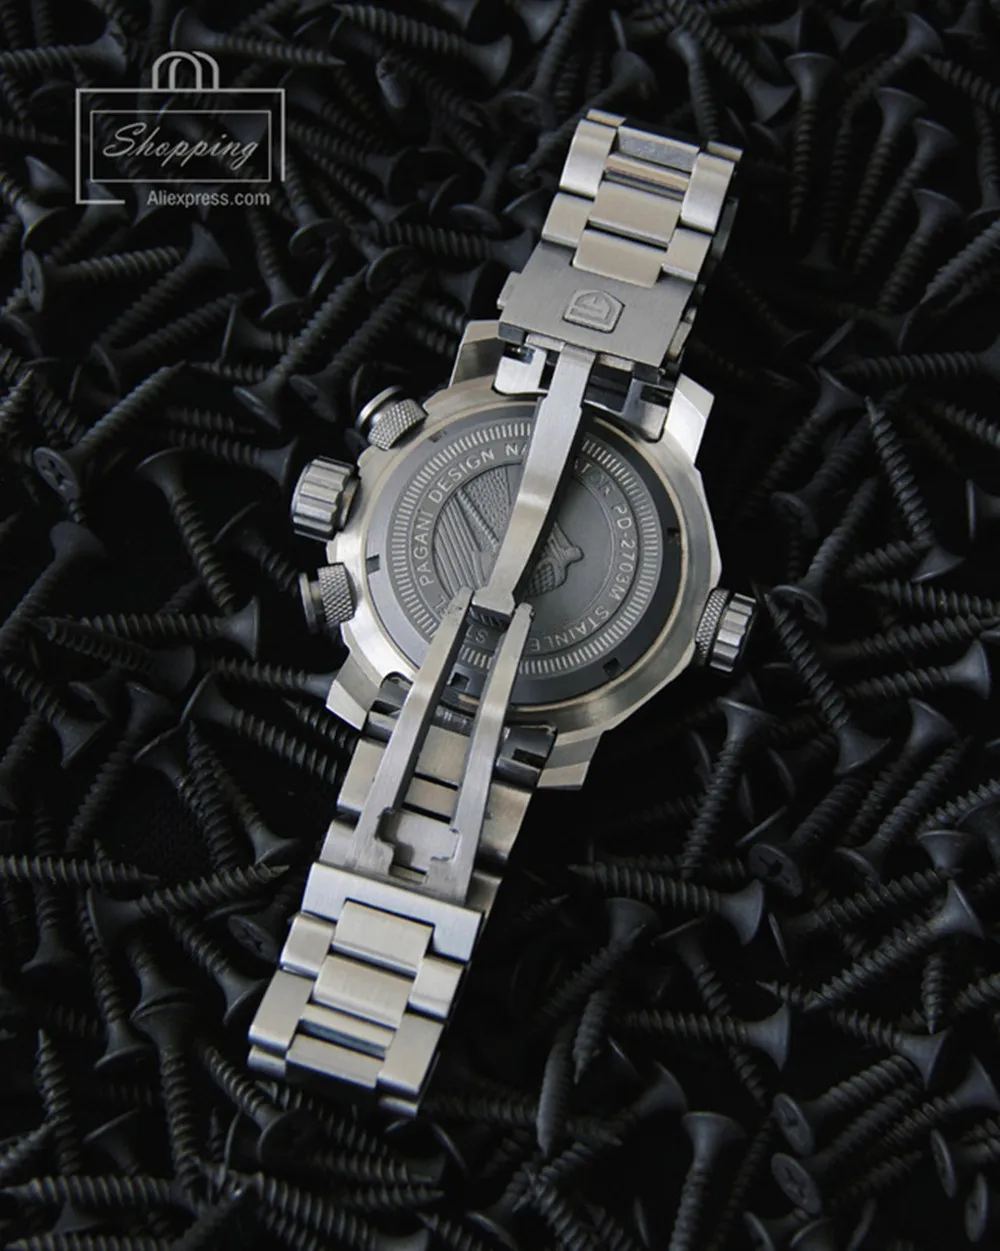 Новинка, PAGANI дизайнерские военные мужские часы, роскошный бренд, полностью нержавеющая сталь, большие спортивные часы с циферблатом для мужчин, мужские часы